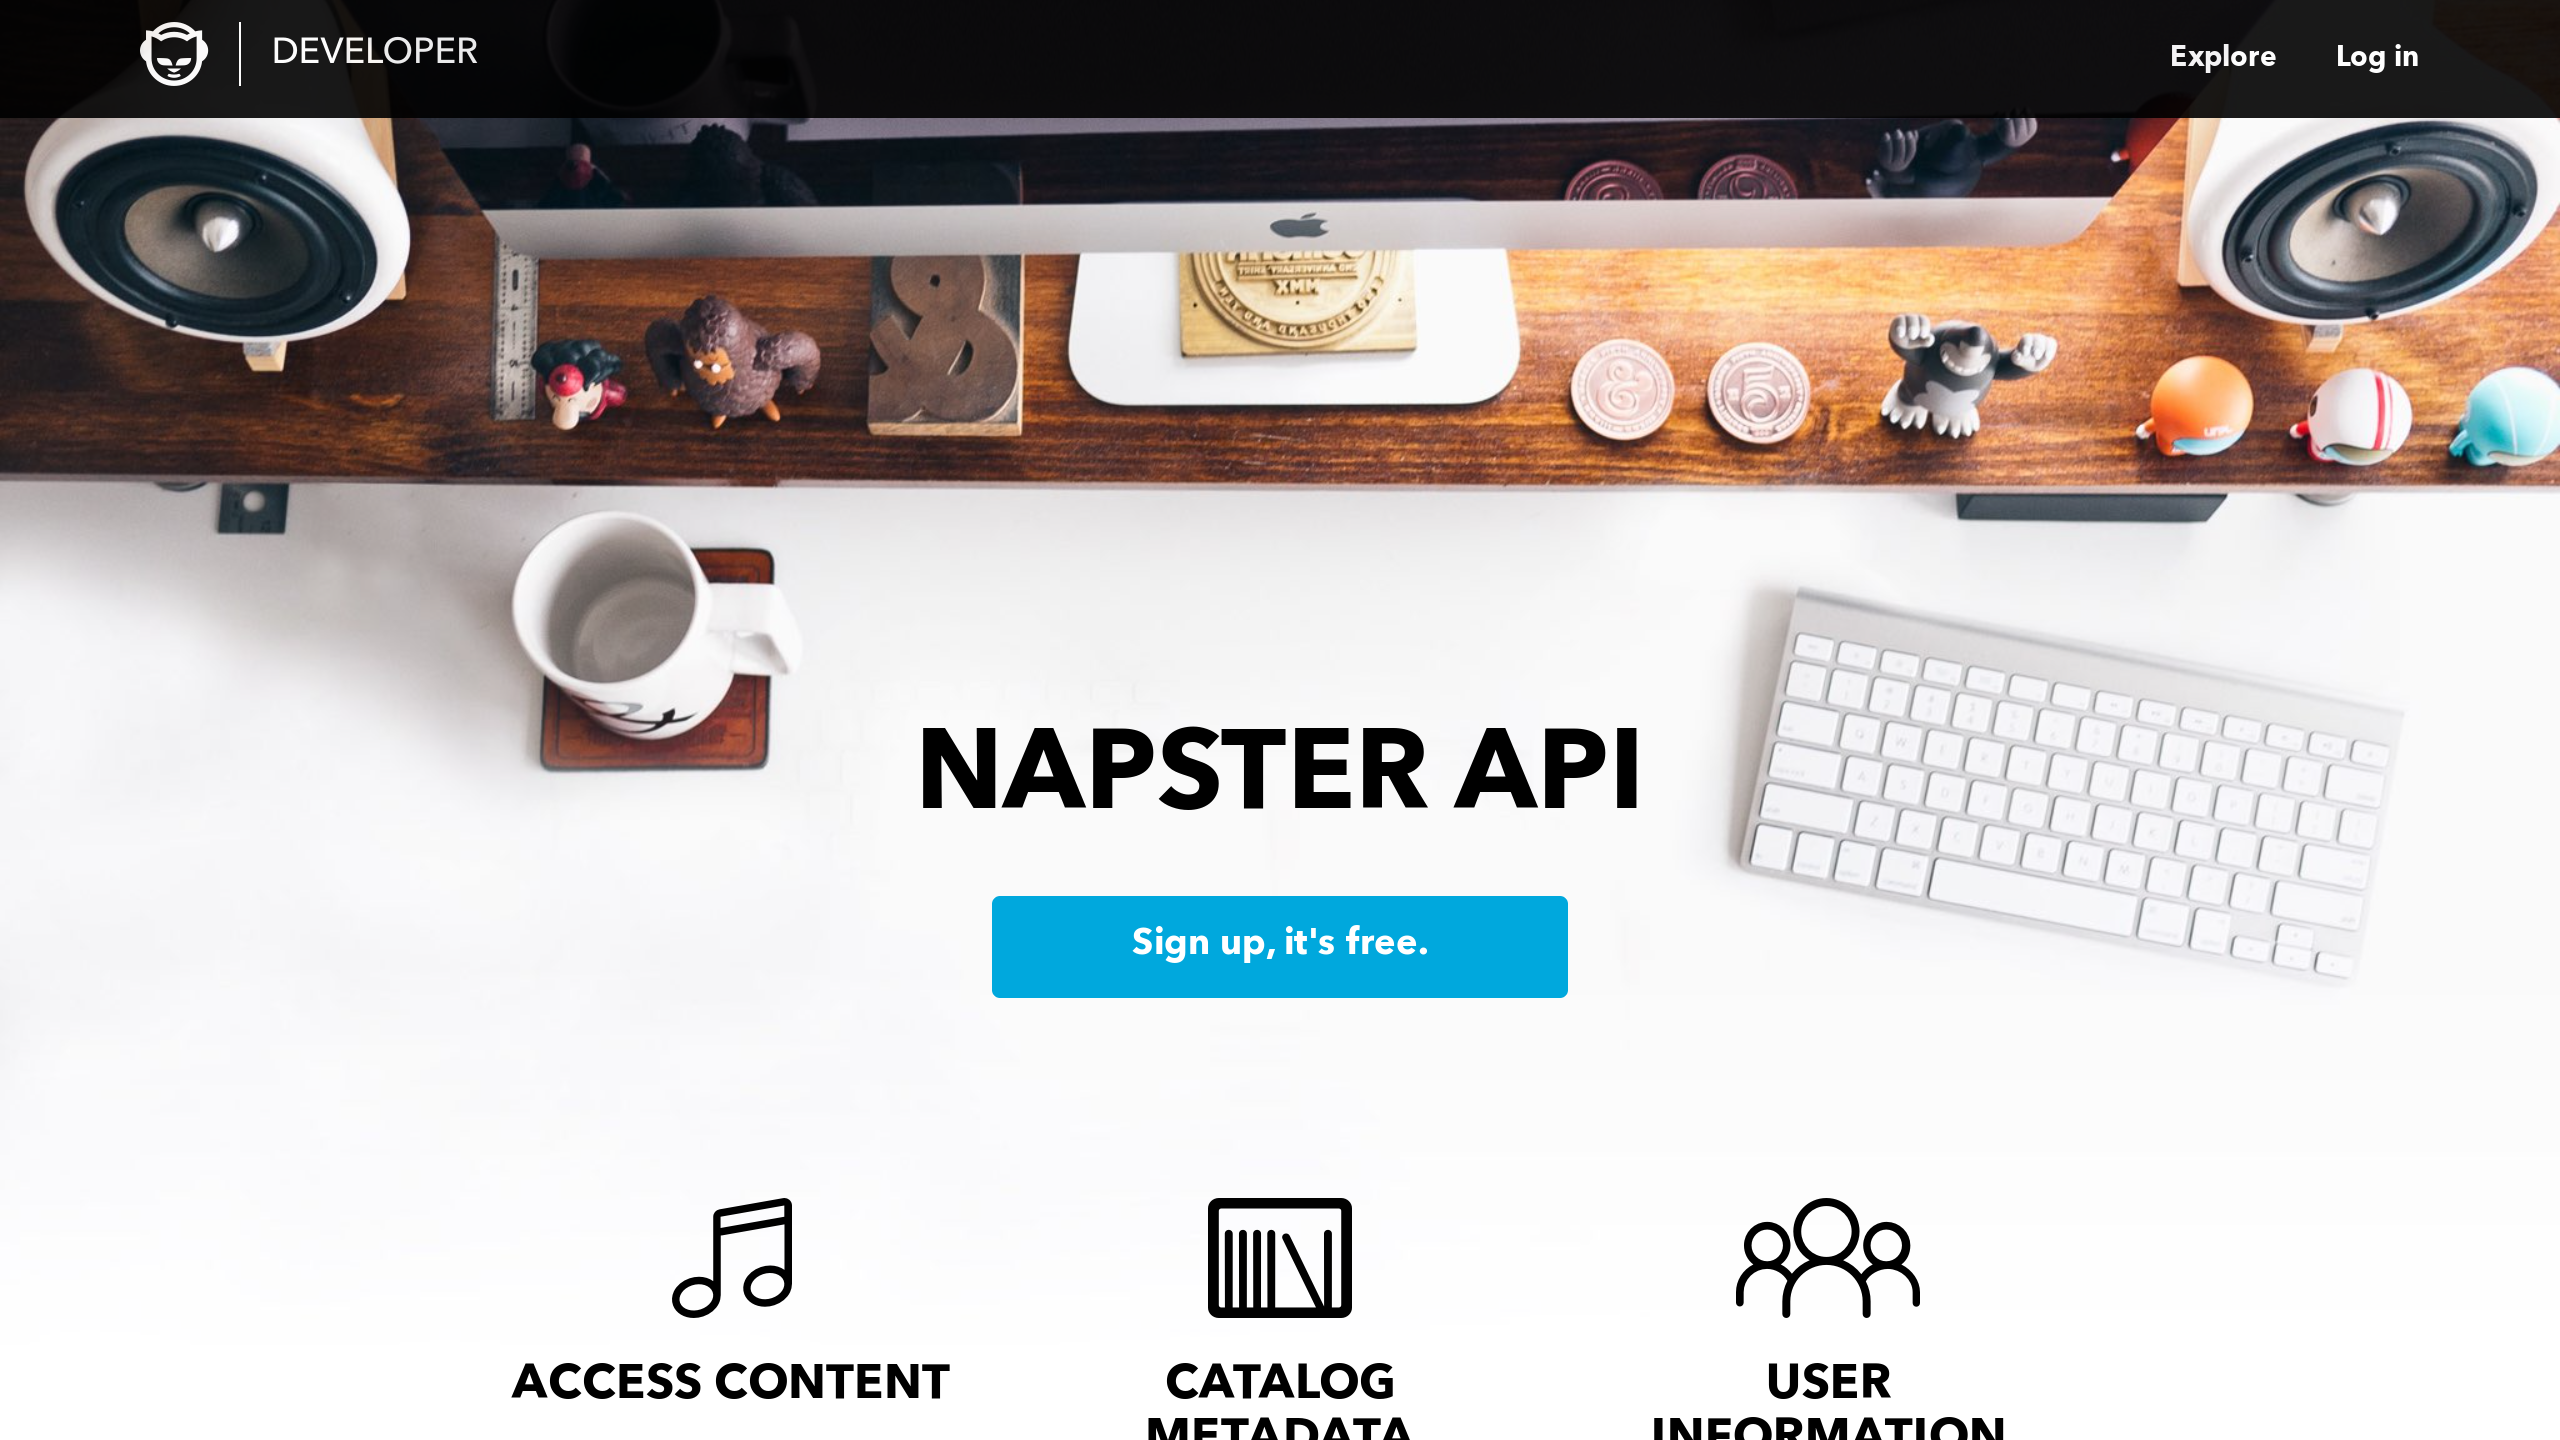 Napster's website screenshot